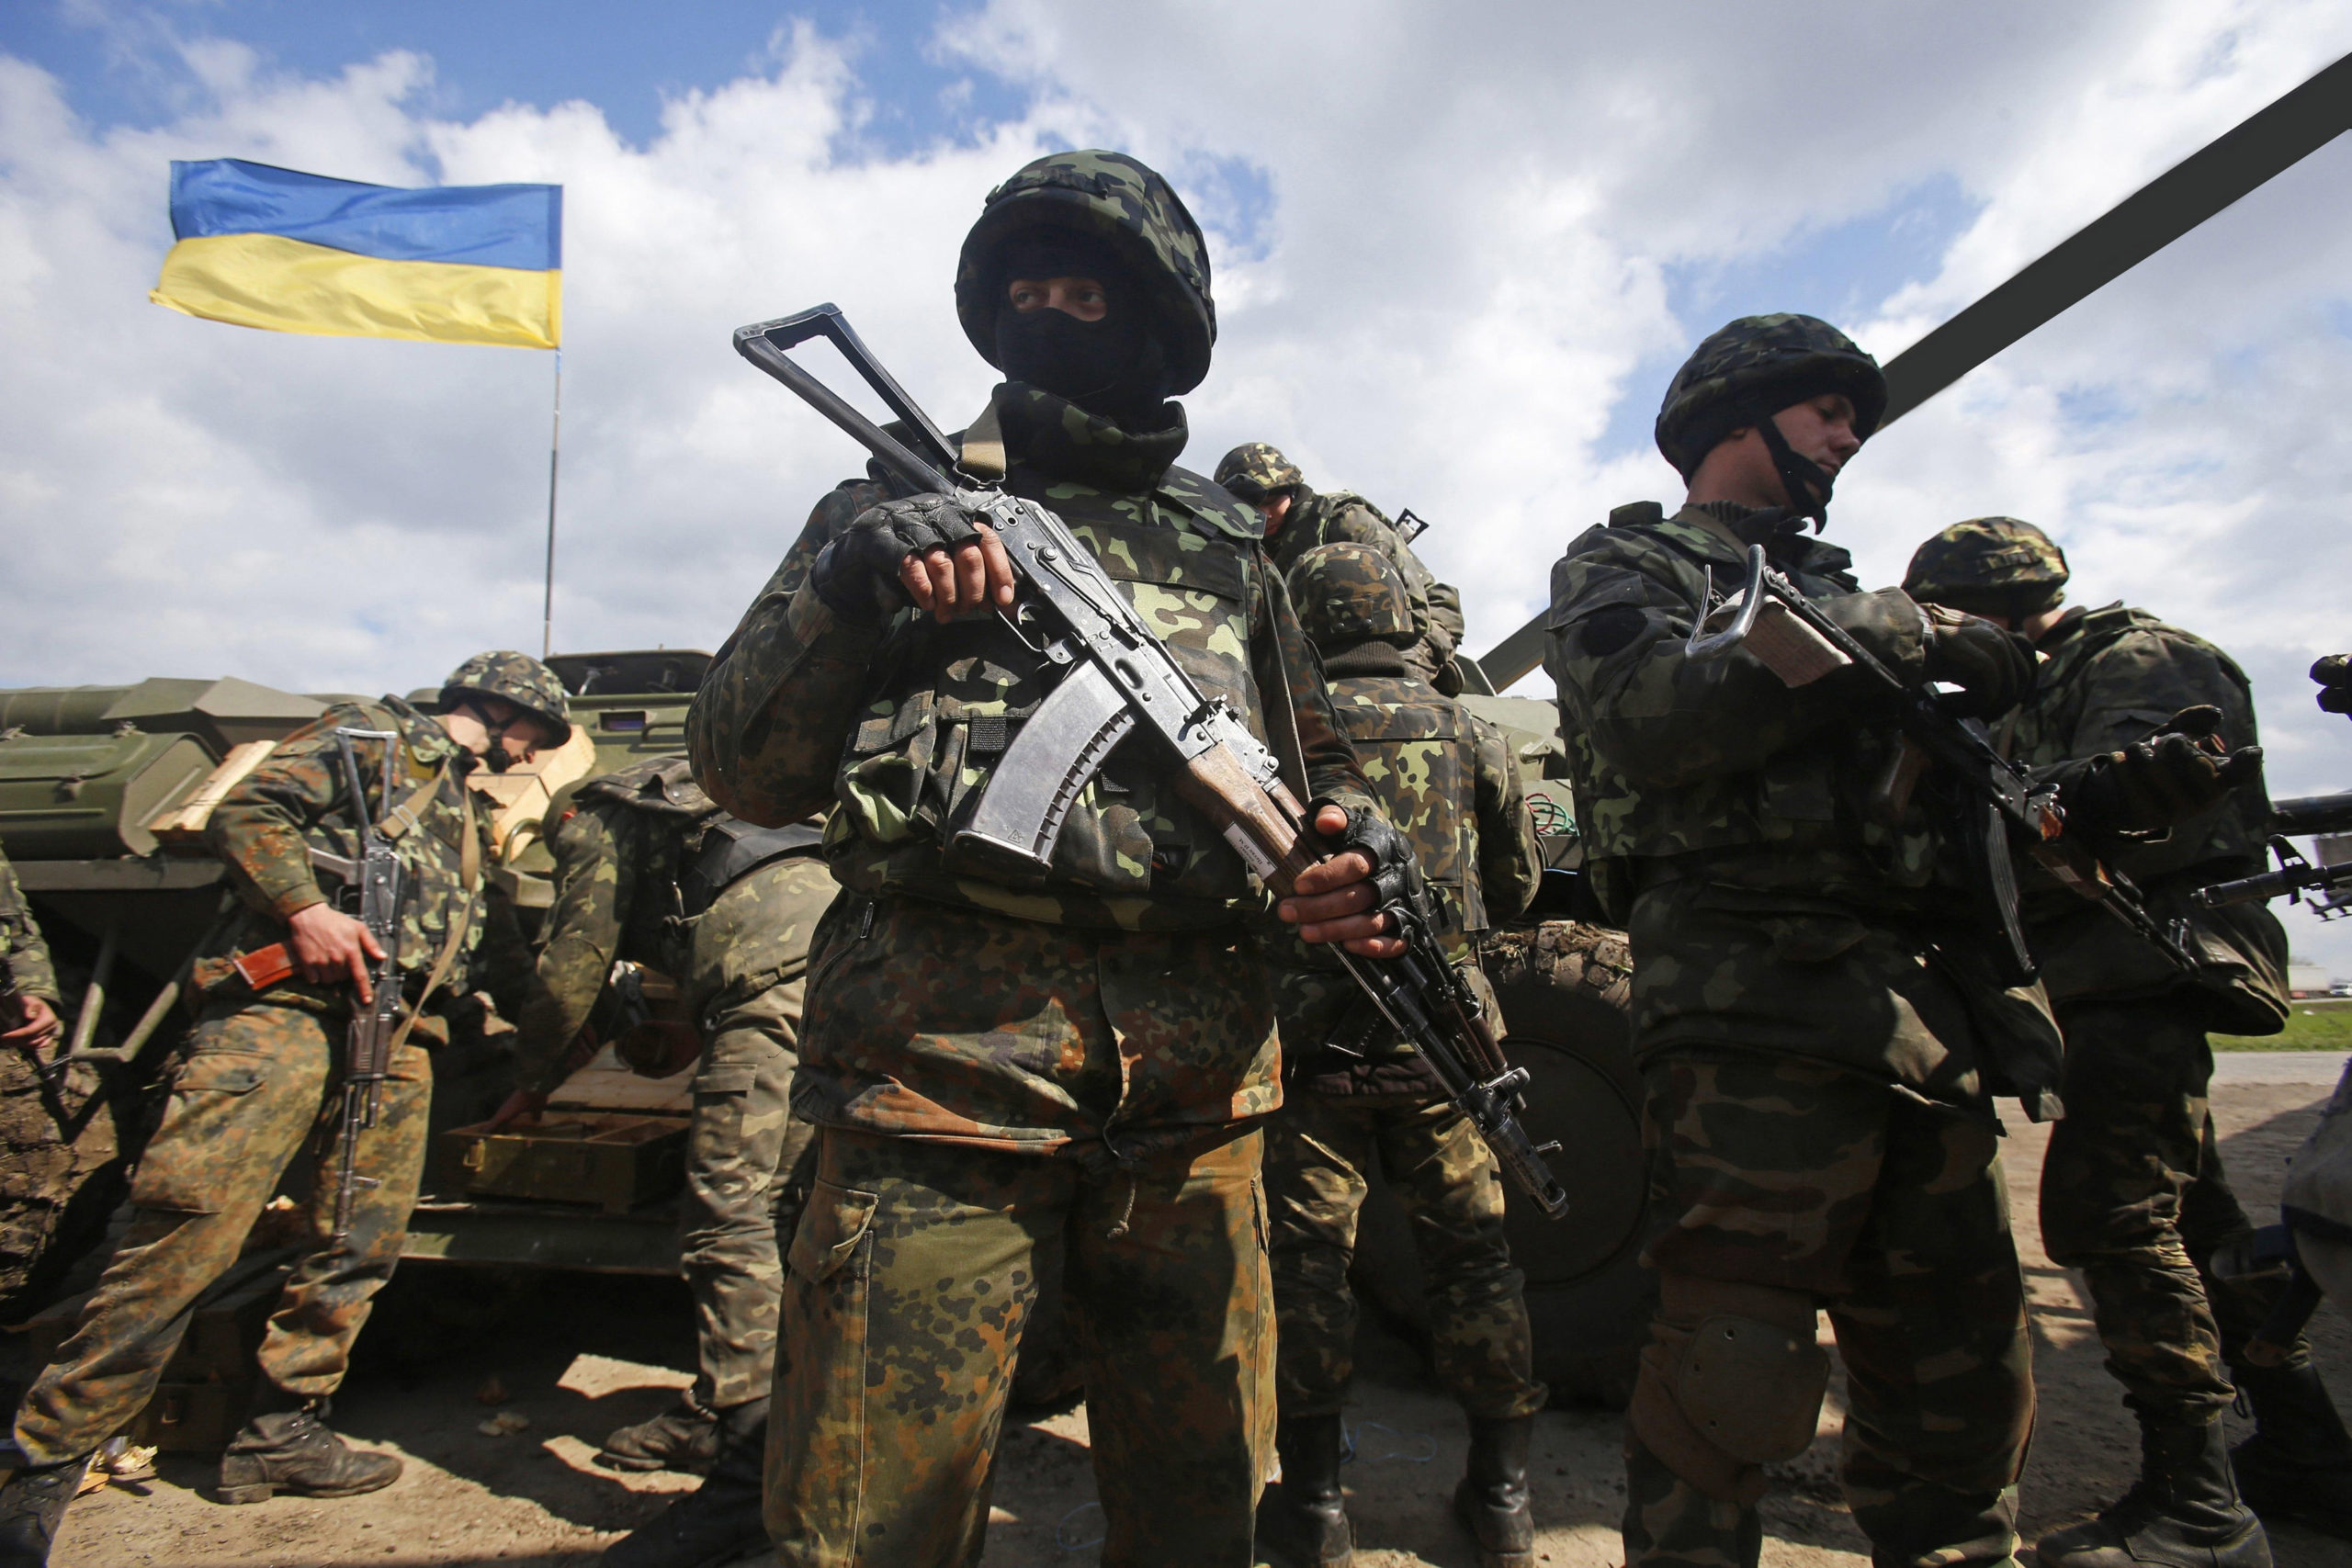 Critical Context: Russo-Ukrainian War